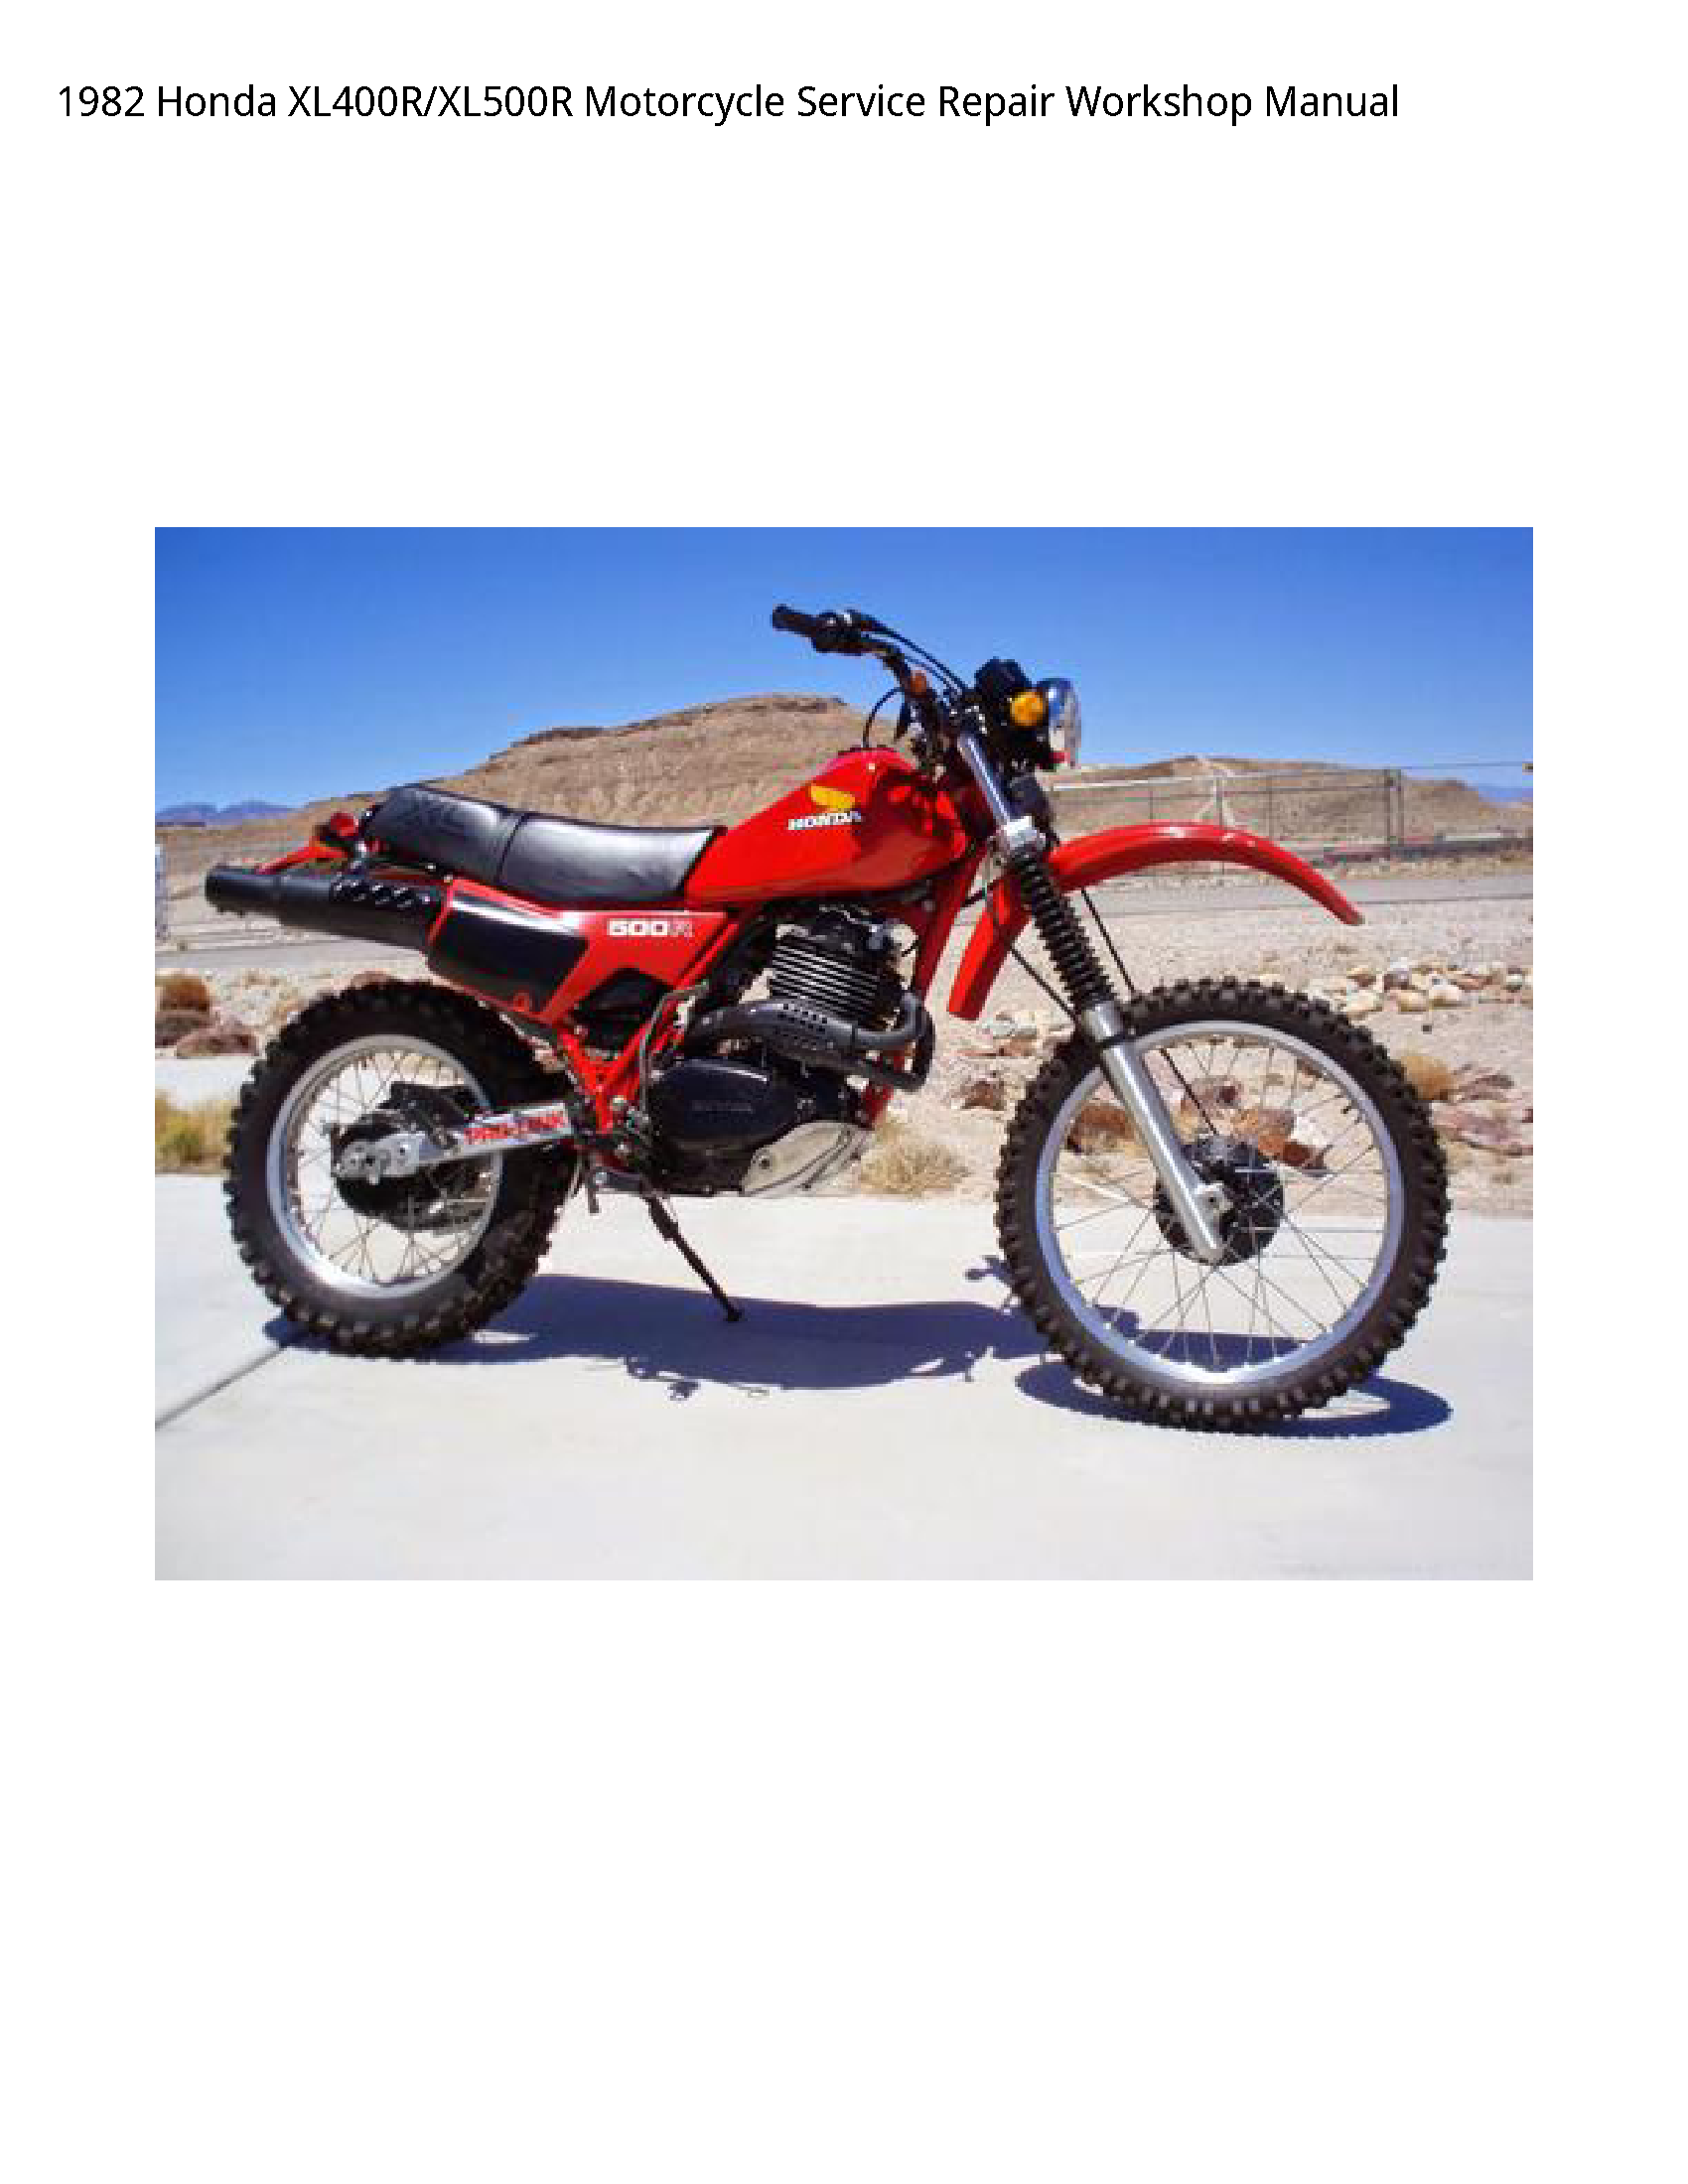 Honda XL400R Motorcycle manual